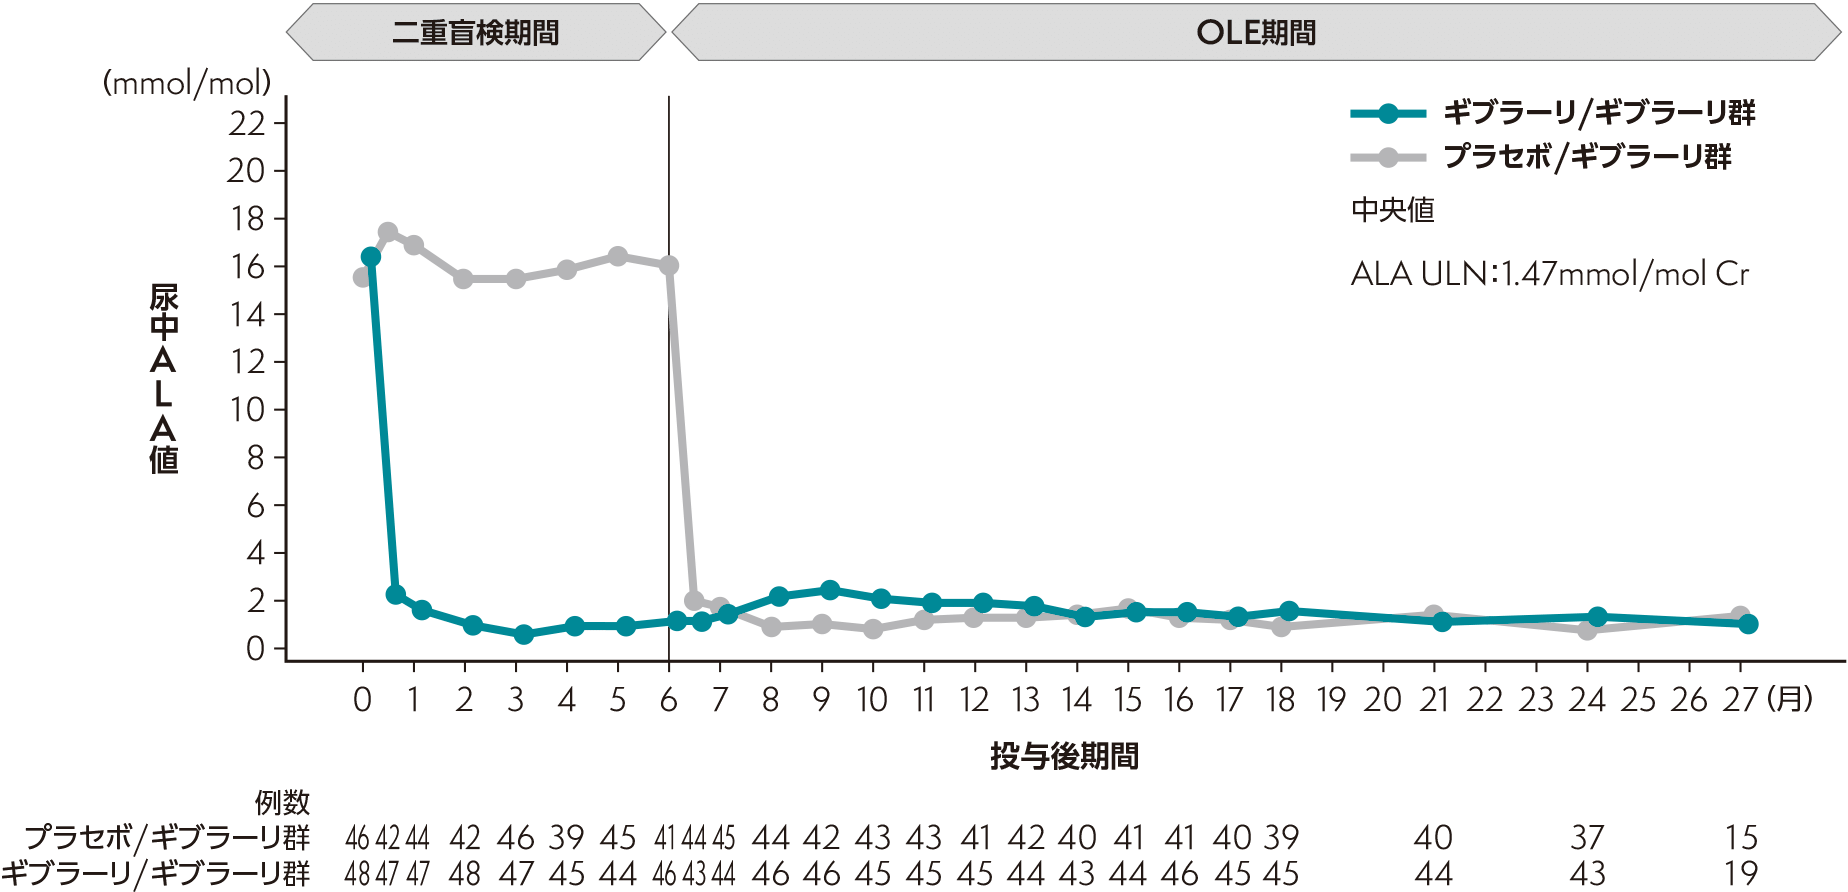 二重盲検期間＋OLE期間における尿中ALA値の推移